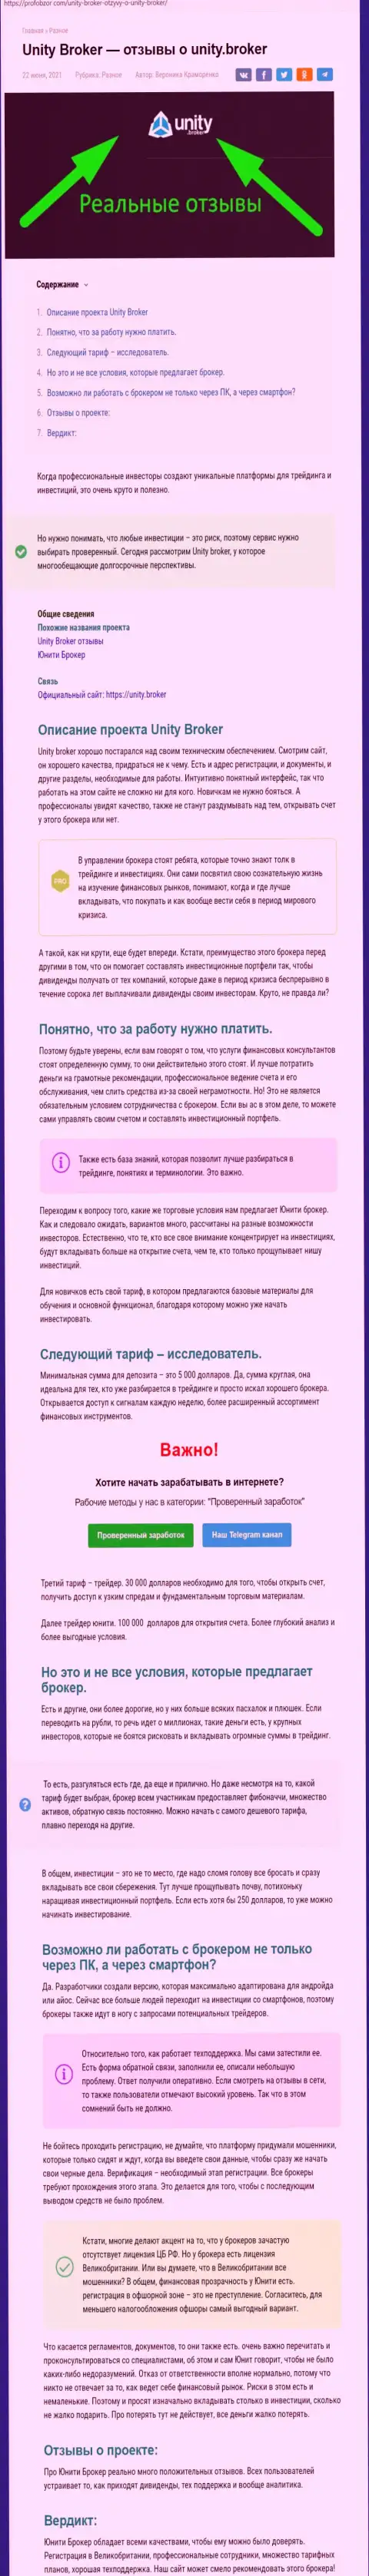 Обзор forex-компании Юнити Брокер на портале профобзор ком